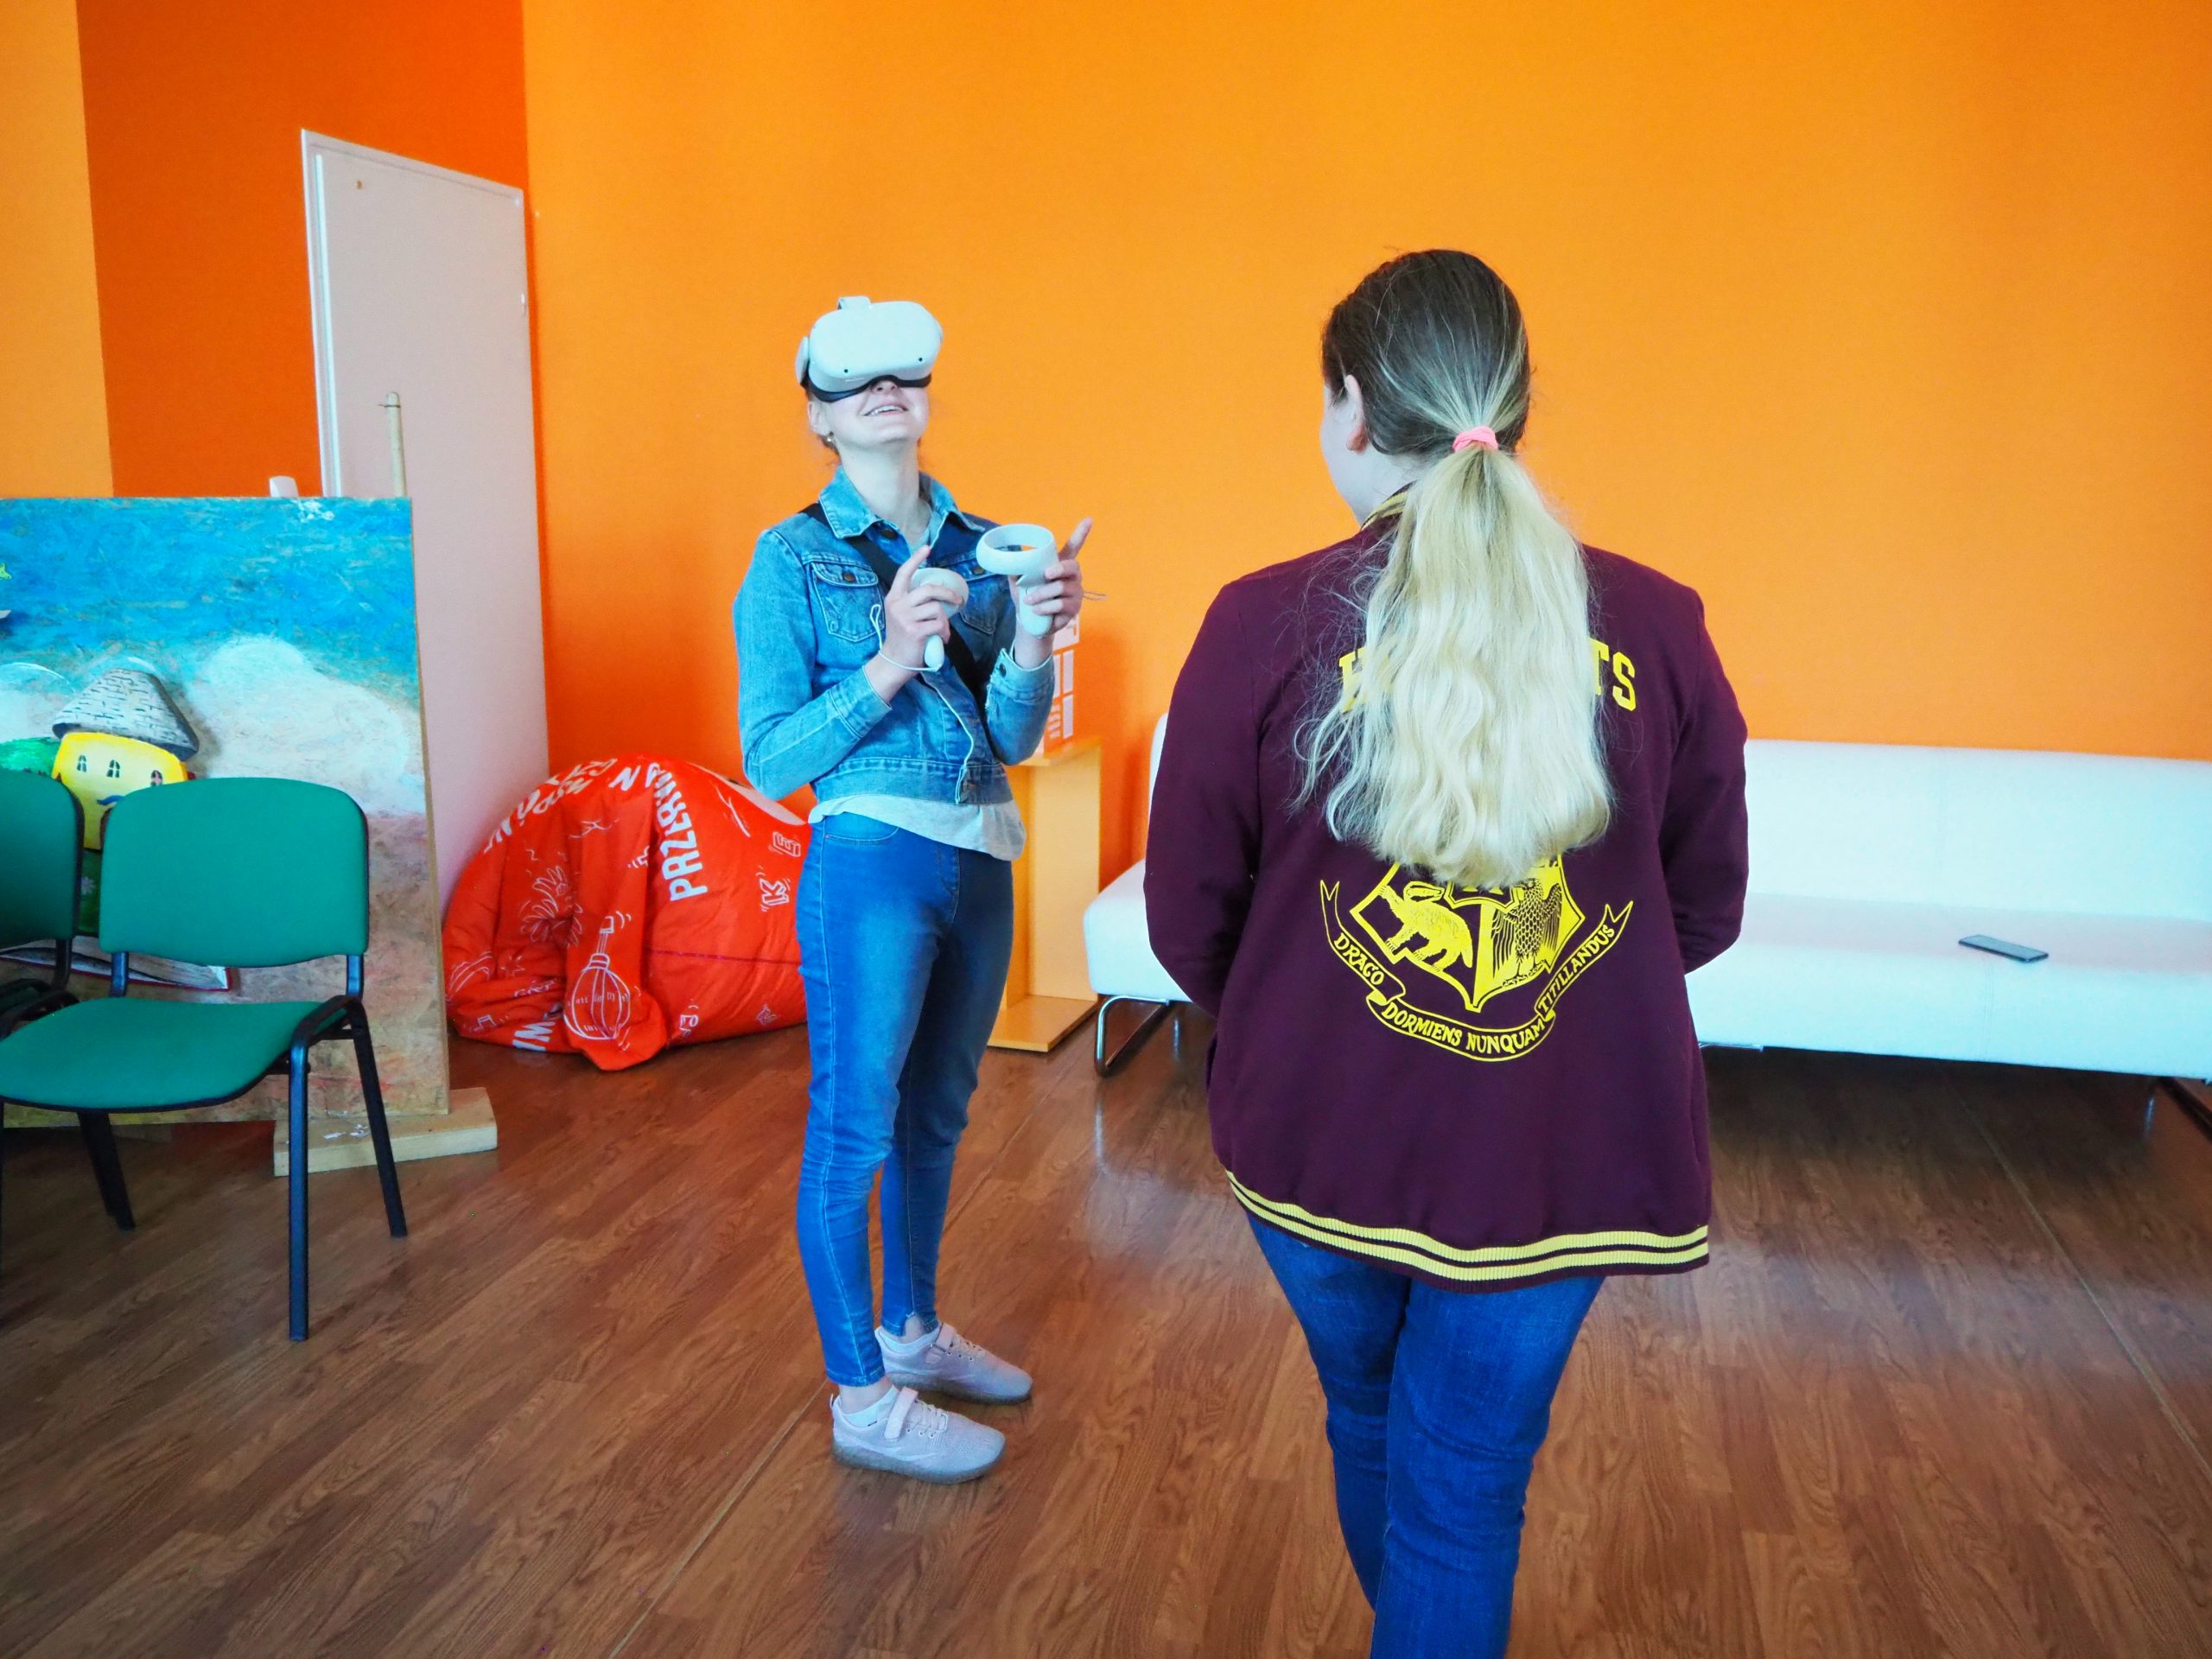 dwie kobiety stoją w pracowni orange, jedna z ich odwrócona jest plecami a druga korzysta z gogli do wirtualnej rzeczywistości